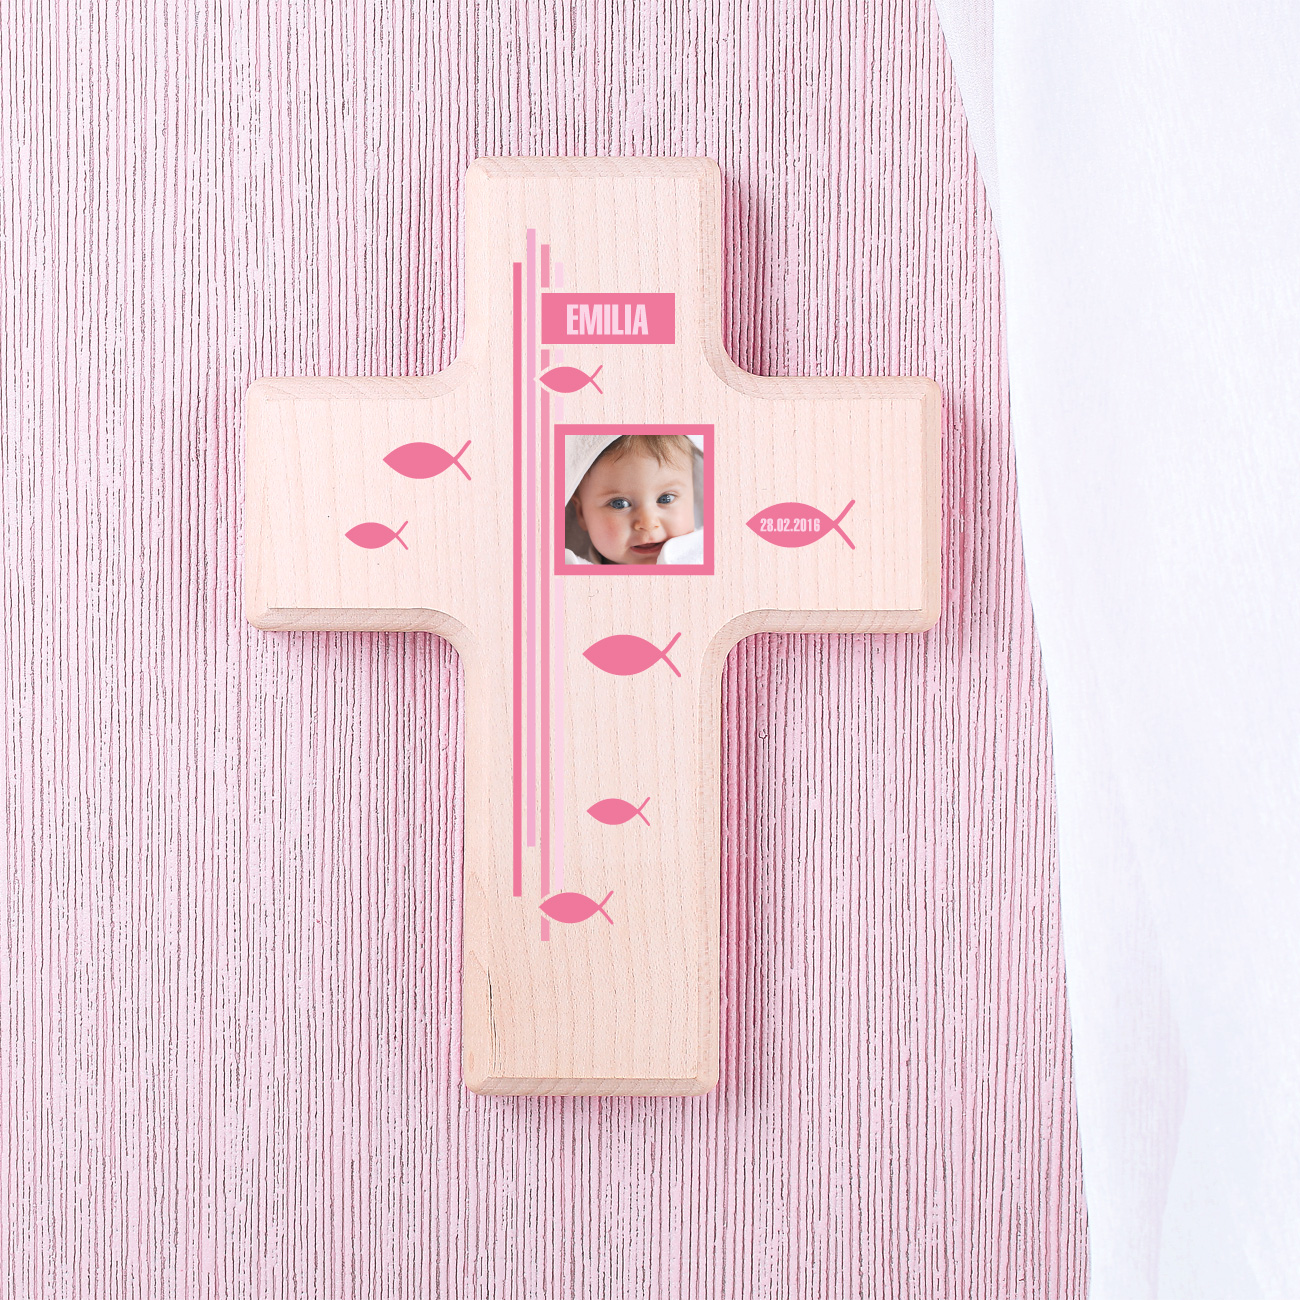 bedrucktes Holzkreuz zur Taufe für Mädchen mit Foto, Name und Datum